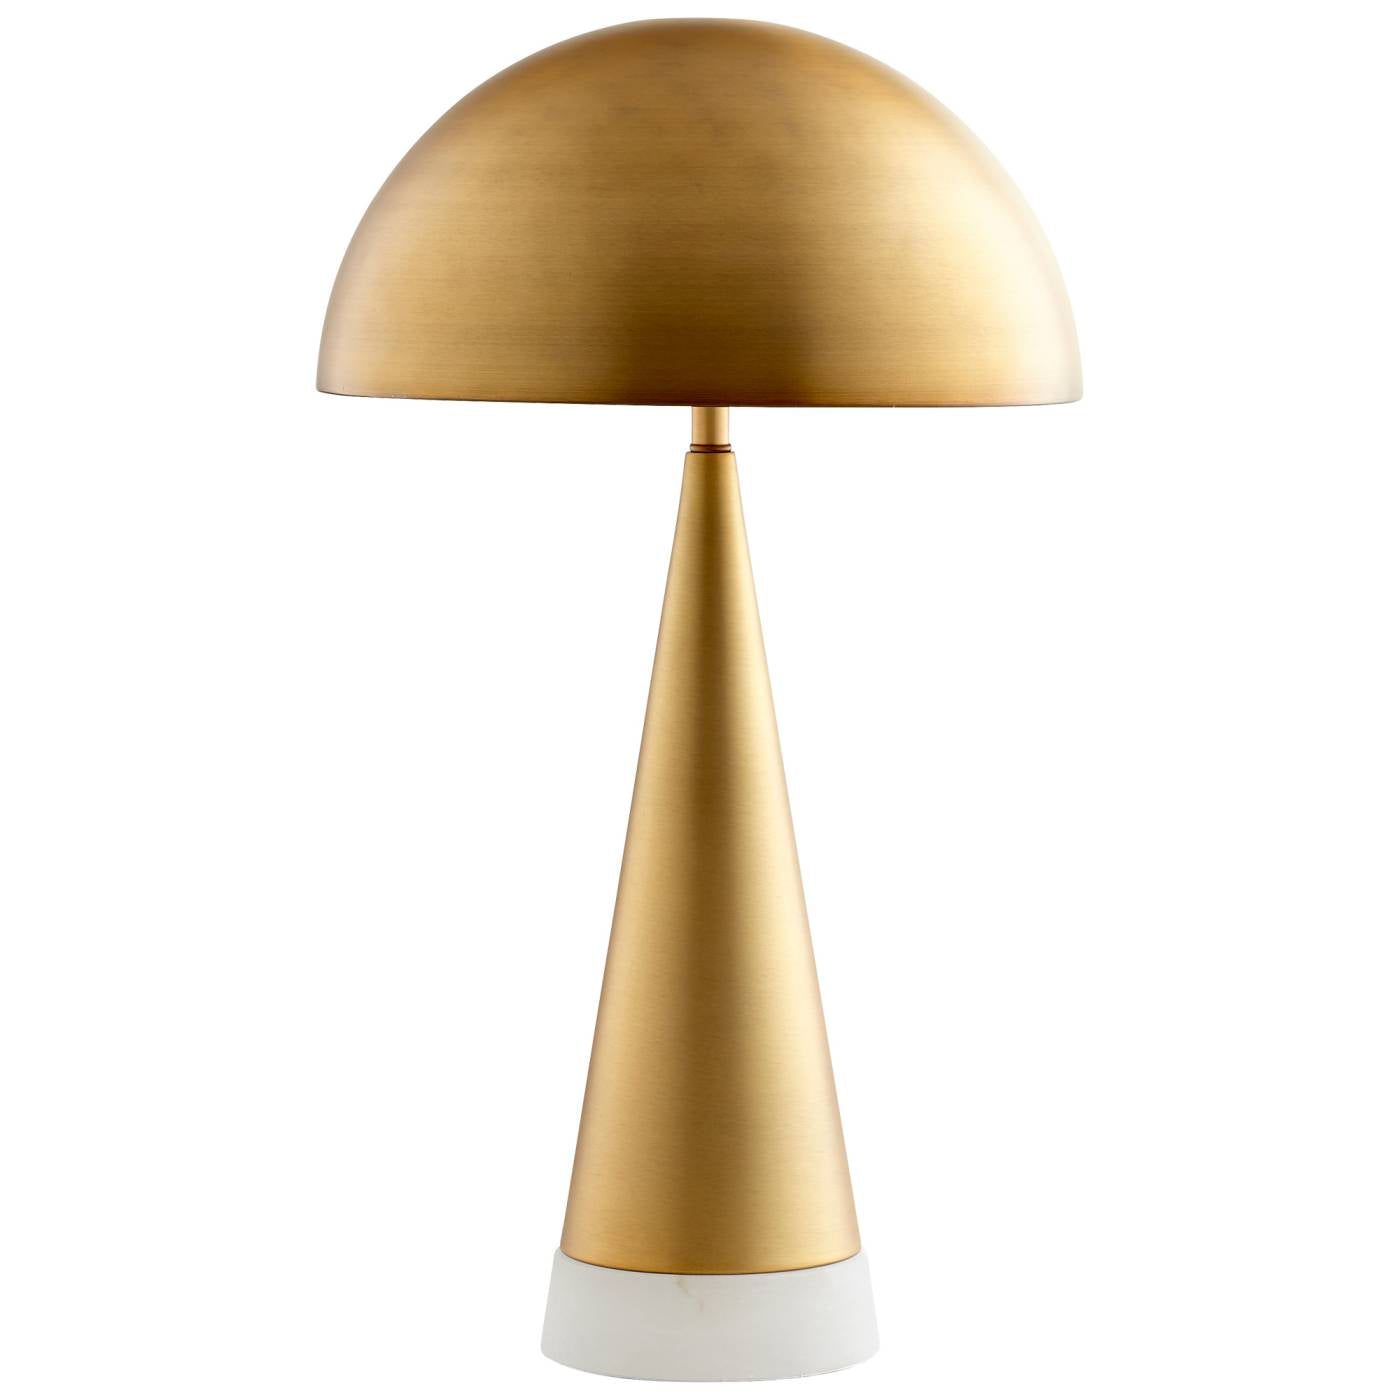 Acropolis Table Lamp By Cyan Design | Cyan Design | Modishstore - 7